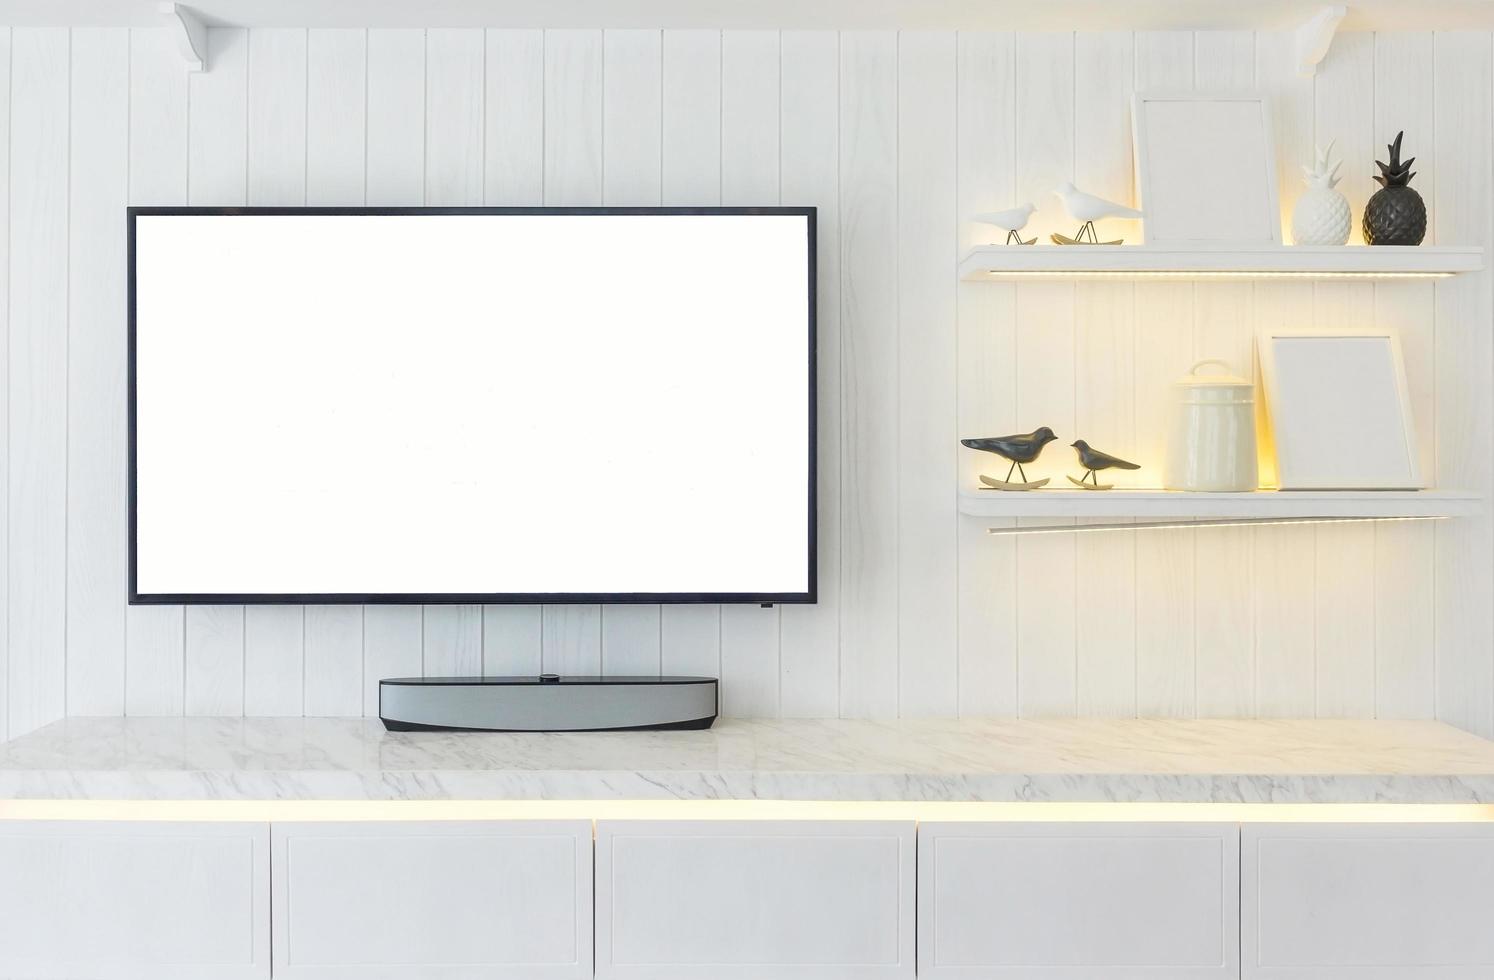 TV-Schrank Interieur moderne Raumgestaltung und gemütlichen Wohnstil, Holz Sideboard auf weißer Wand foto